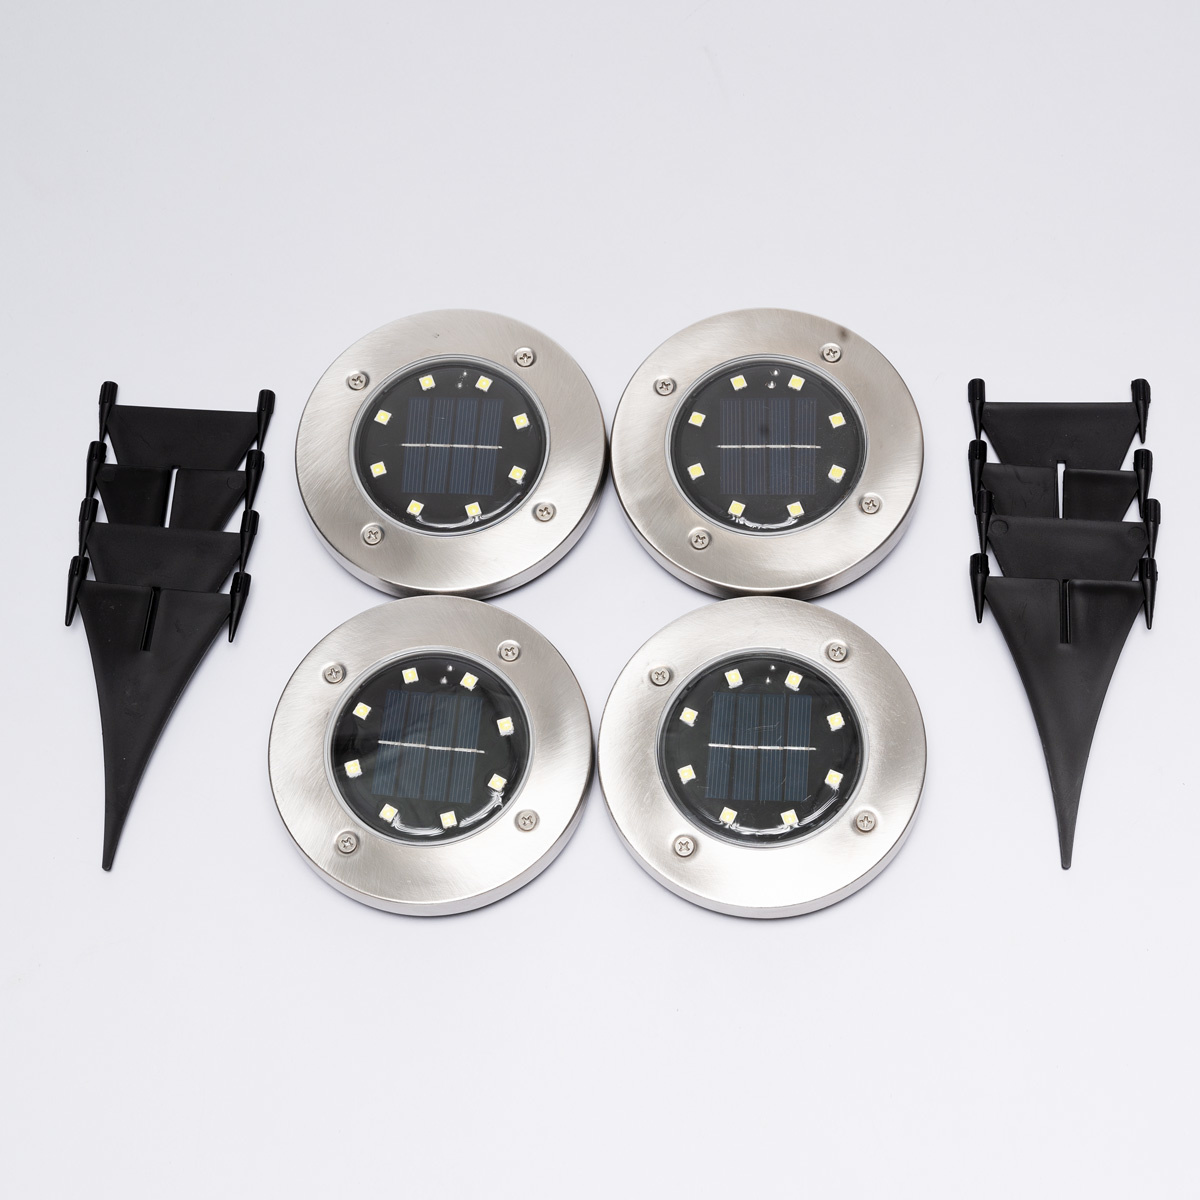 Schaar volume Broers en zussen Solar LED Grondspots - Set van 4 stuks Tuinverlichting Spots -  Padverlichting op Zonne Energie - Waterdicht en Milieuvriendelijk -  LedlampshopXL